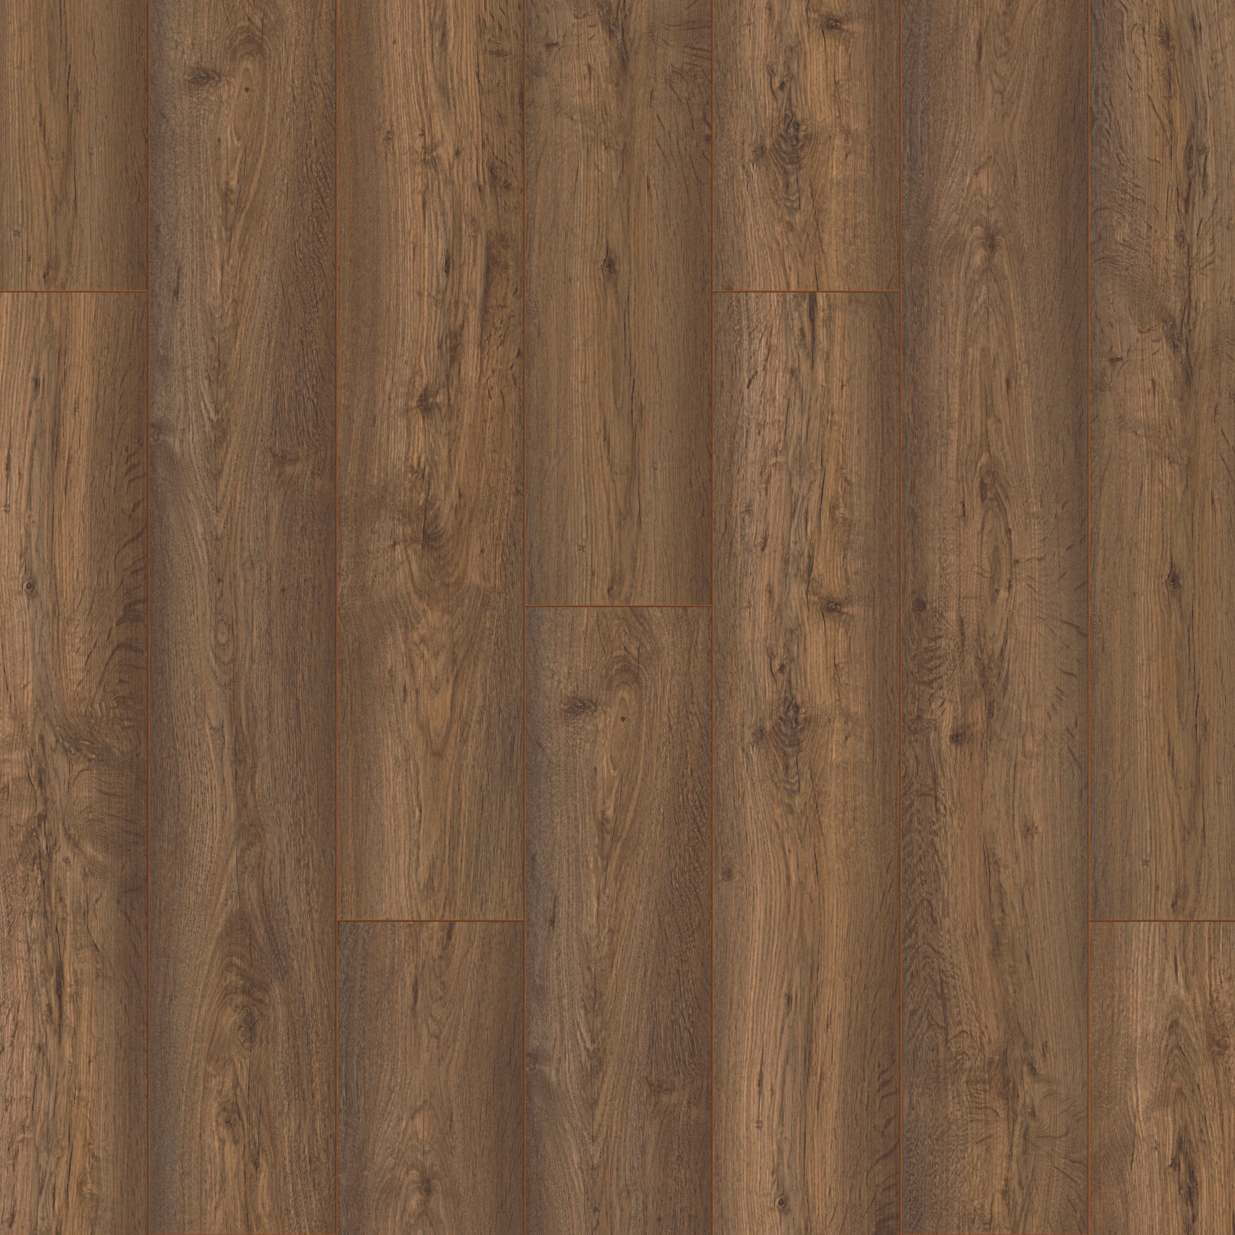 Image of Acacia Brown Oak 10mm Laminate Flooring - 1.73m2